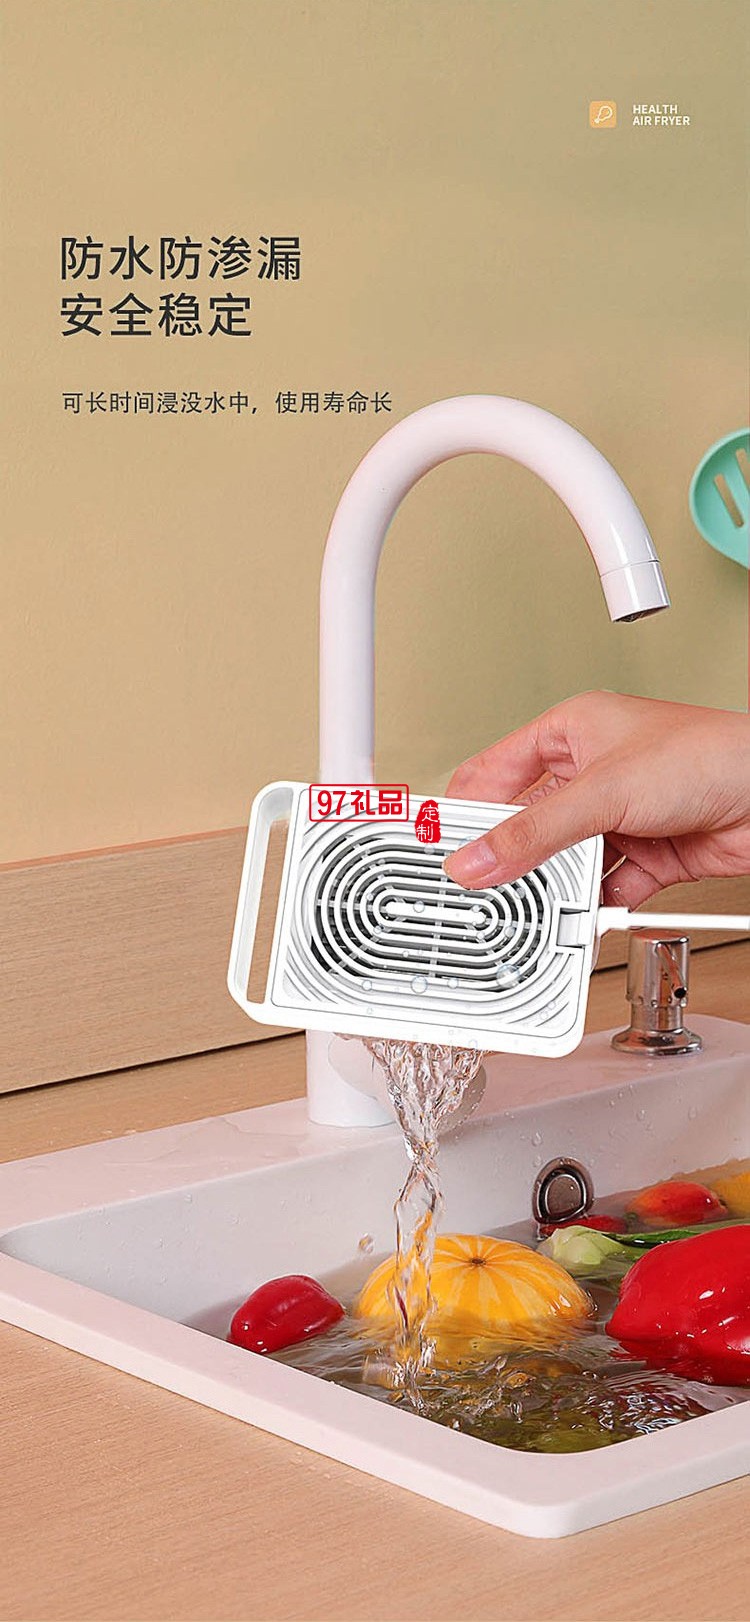  食材净化器 洗机家用杀菌便携ALY-H48GS01D定制公司广告礼品